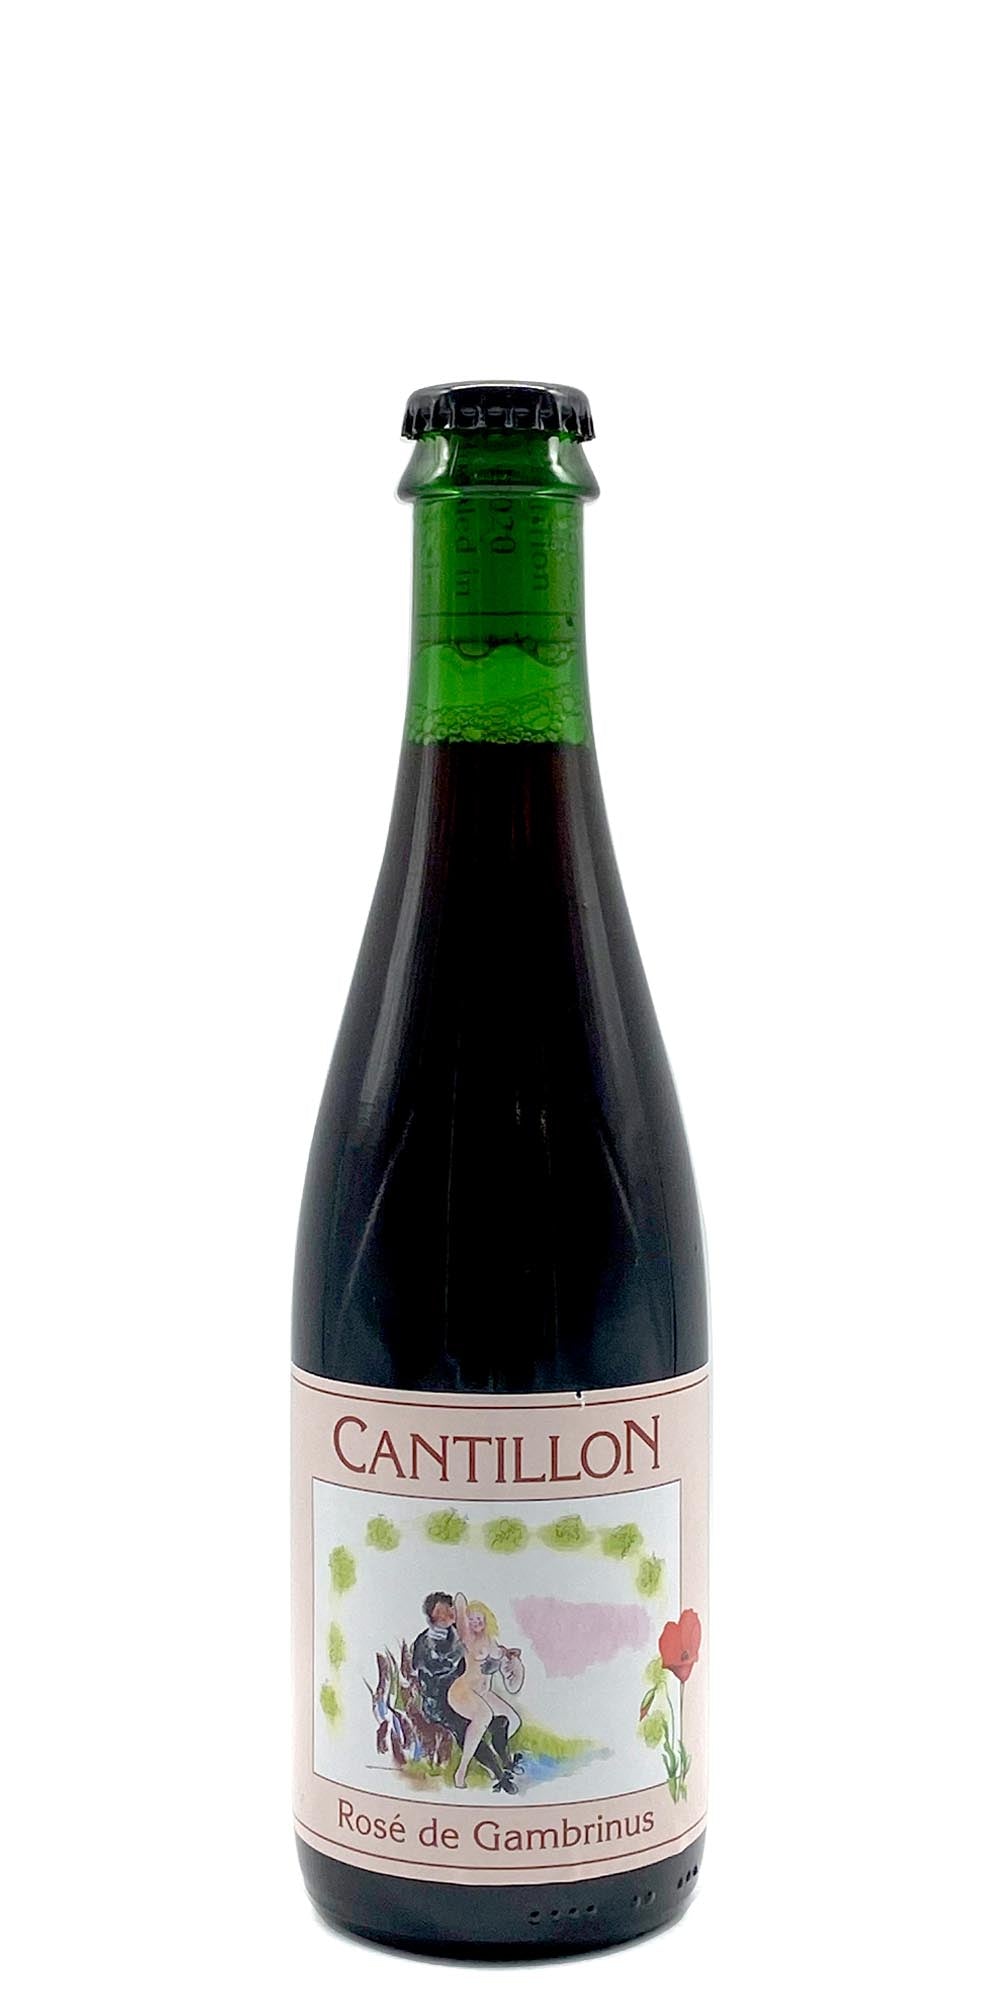 Cantillon - Rose de Gambrinus (2014)